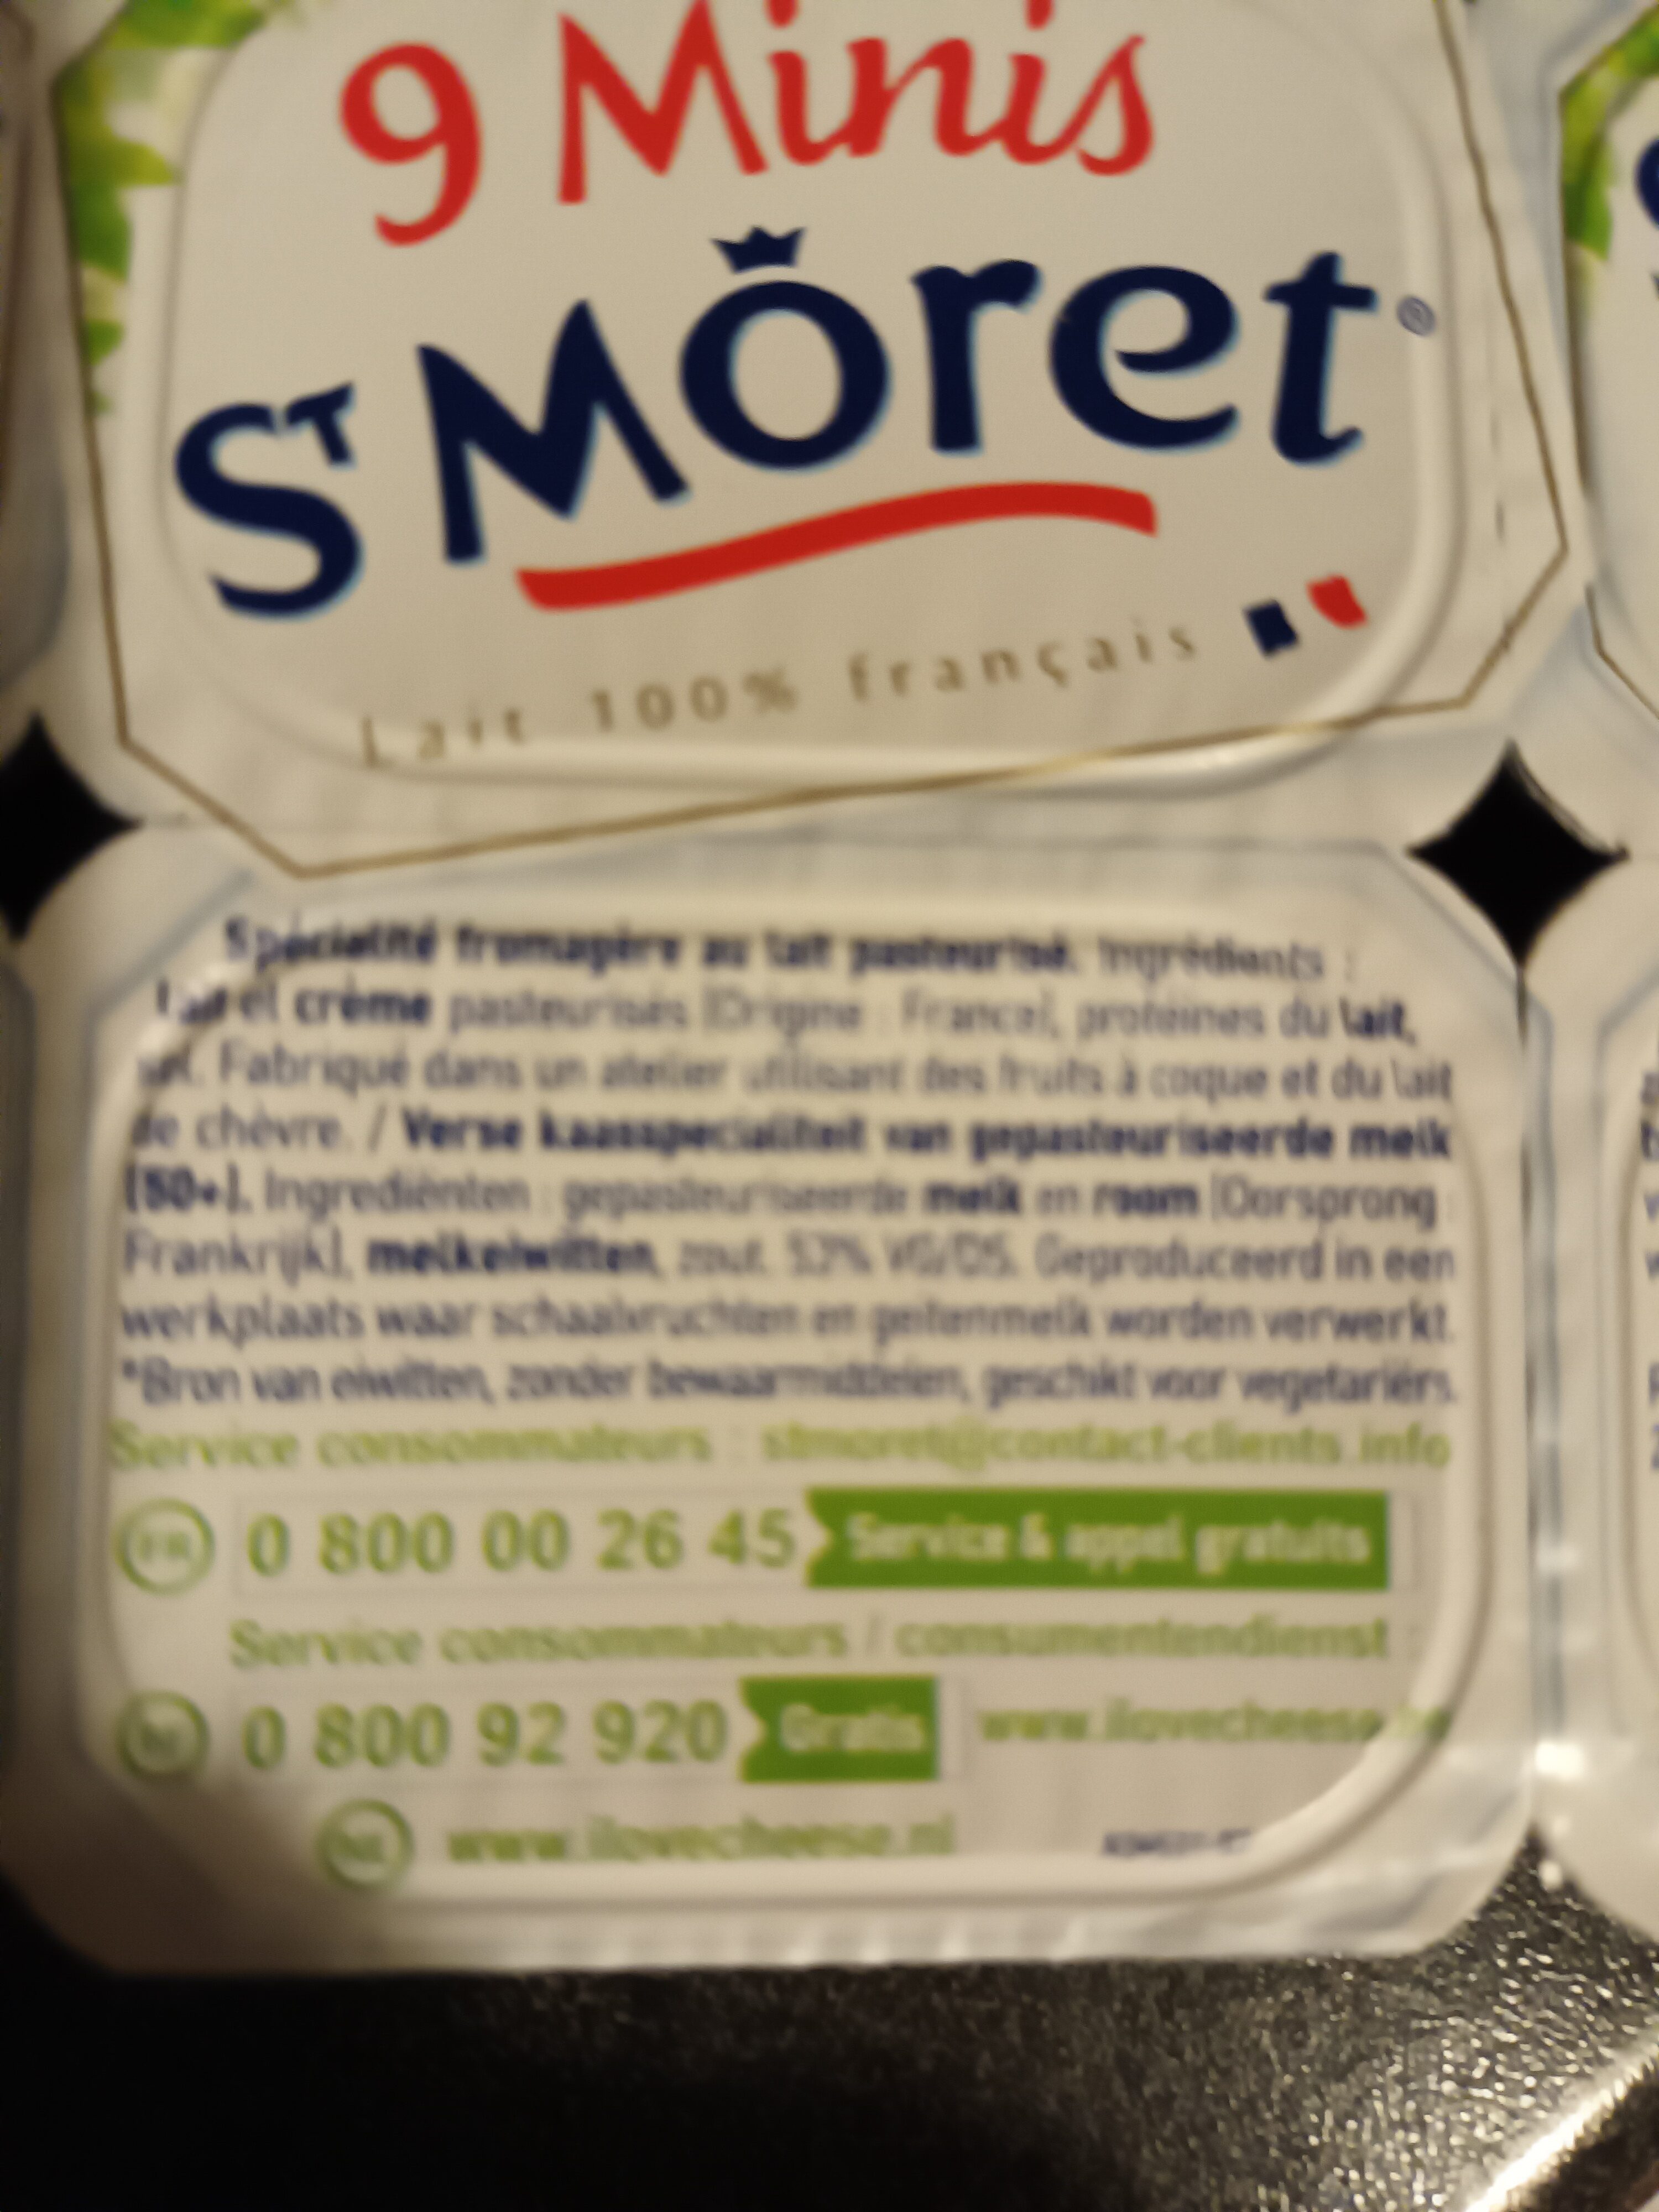 9 Minis St Moret (17,8% MG) - Ingrédients